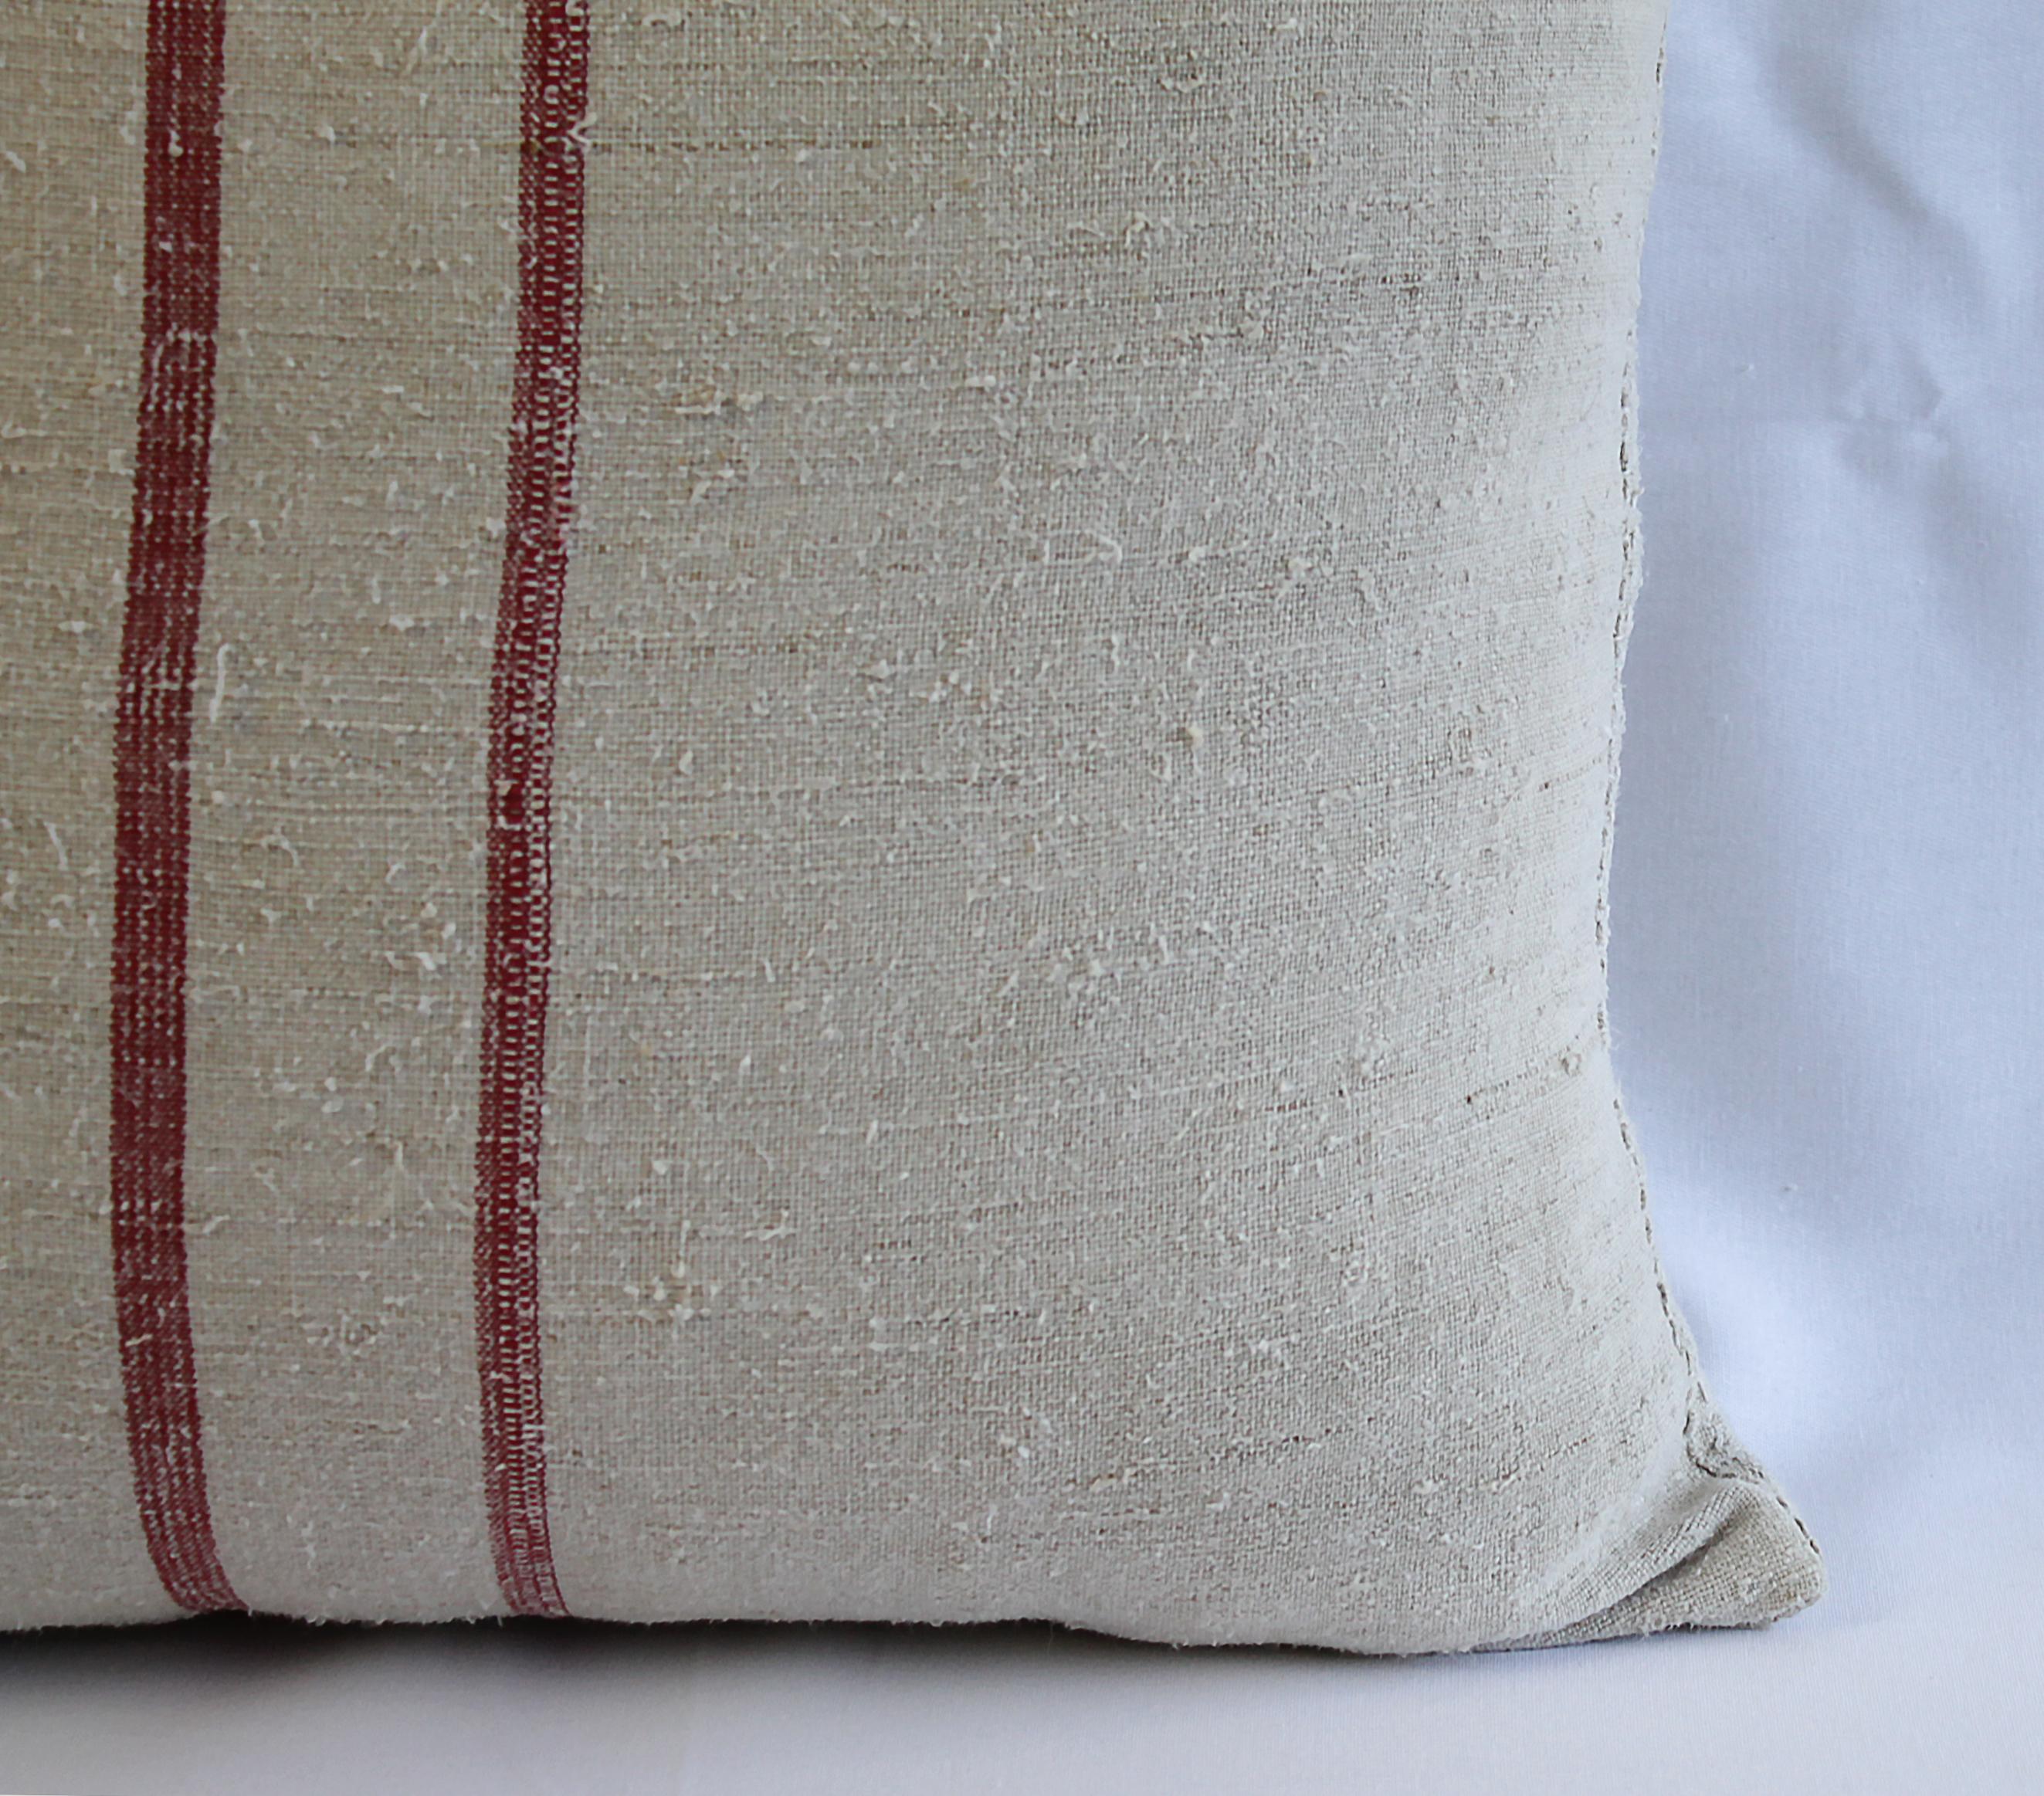 Antique Nubby 19th Century European Linen Grainsack Pillows 1